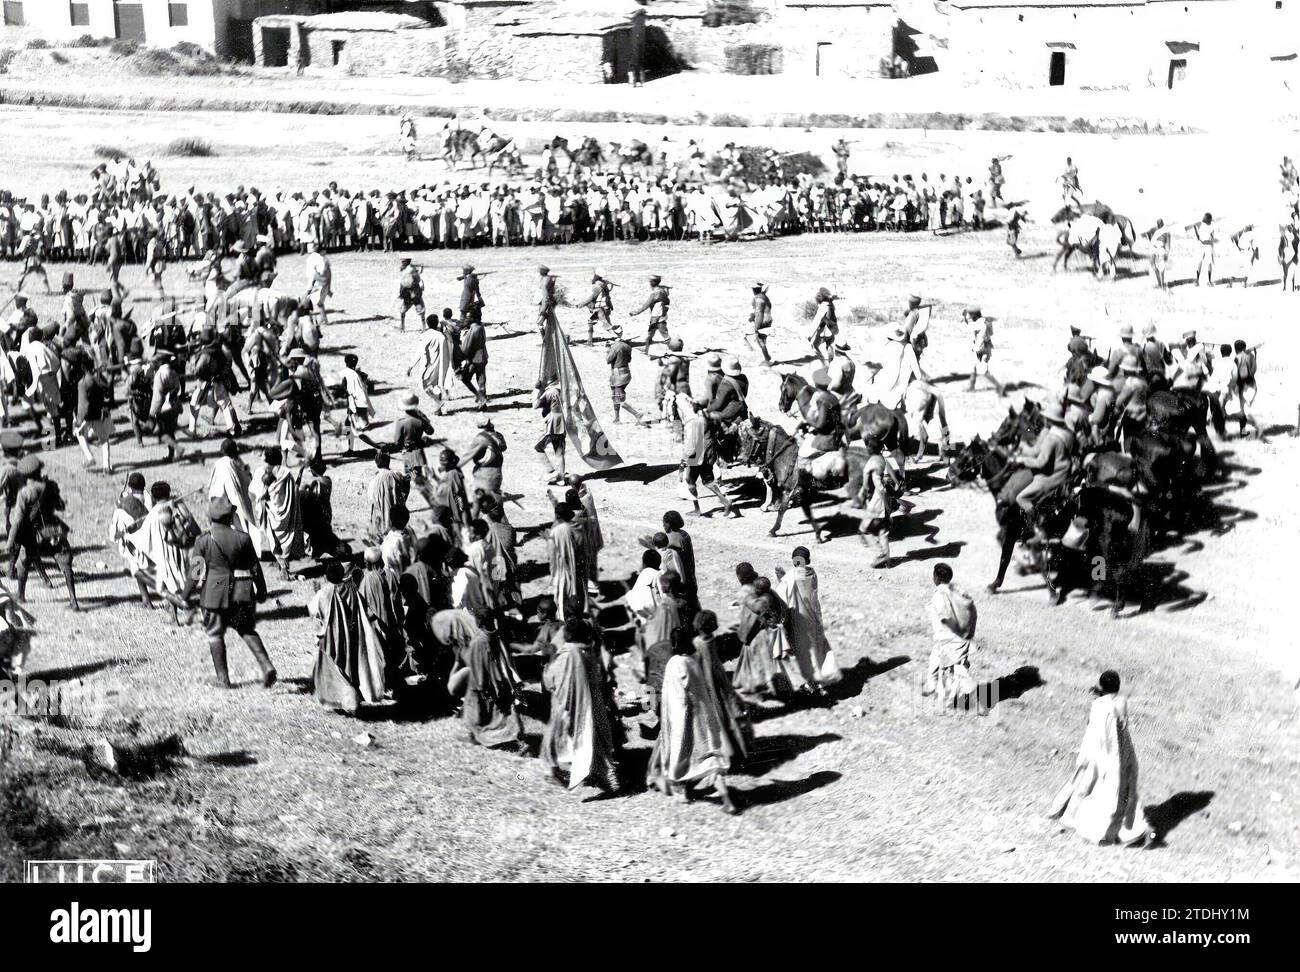 12/31/1934. Italienisch-Äthiopischer Krieg. Einzug der italienischen Truppen in Makalle. Quelle: Album/Archivo ABC Stockfoto